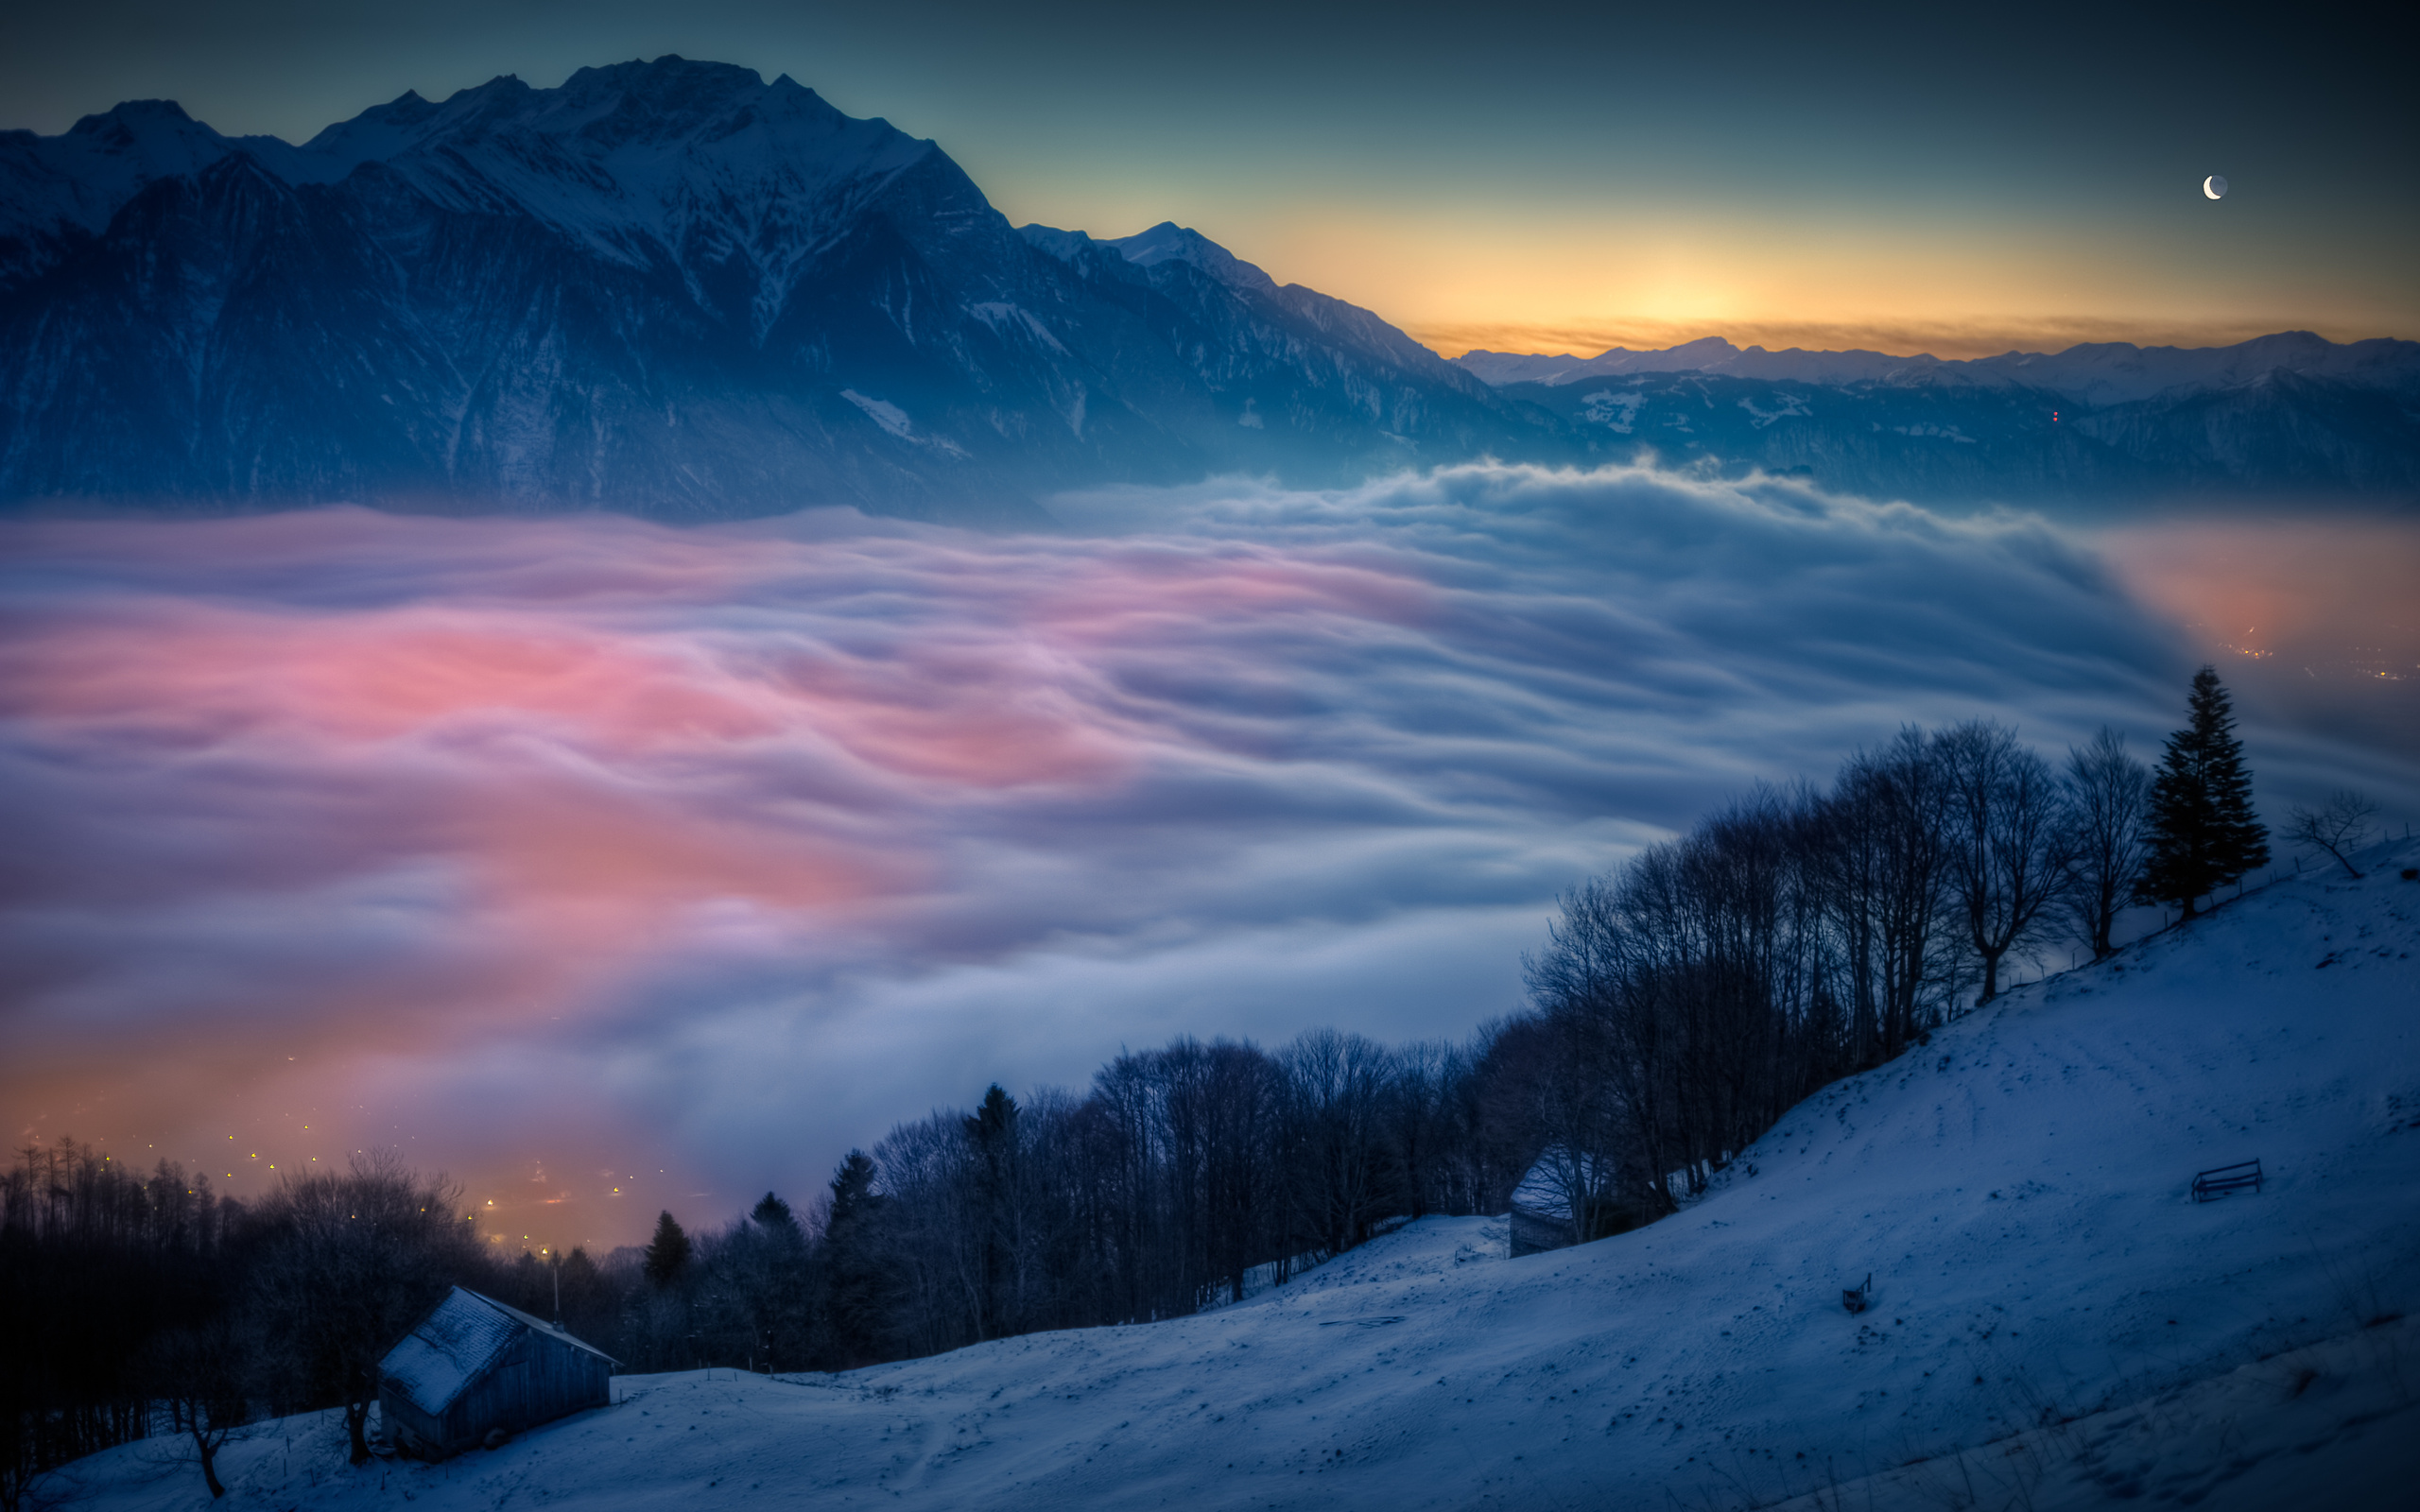 والپیپر رویایی شهری نورانی پوشیده از مه در دل کوهستانی پر از برف مناسب پست اینستاگرام